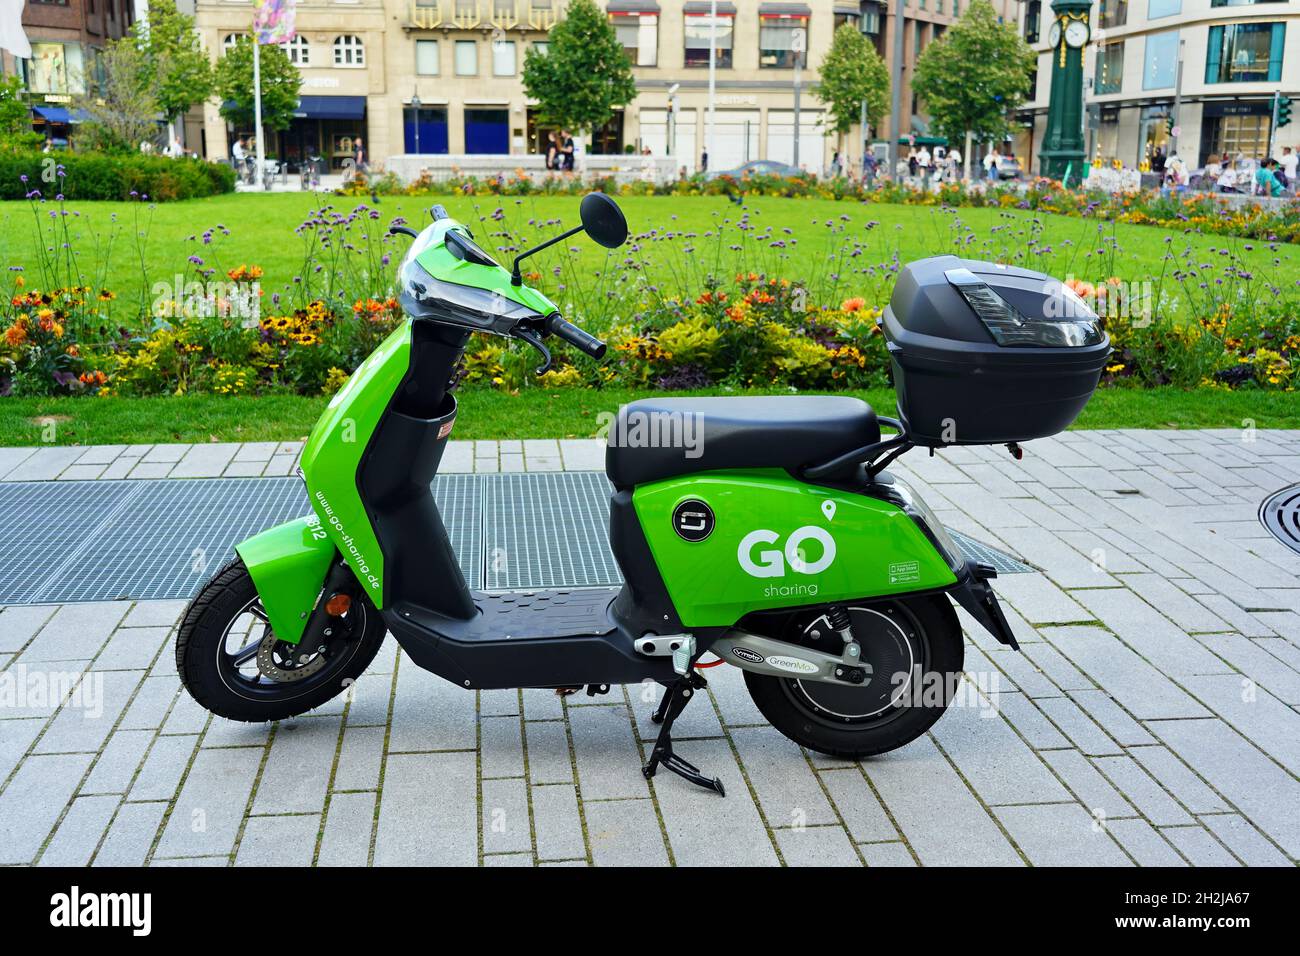 Movilidad compartida: Un e-ciclomotor 'GO Sharing' aparcado en el centro de Düsseldorf, Alemania. GO Sharing es una empresa holandesa. Foto de stock